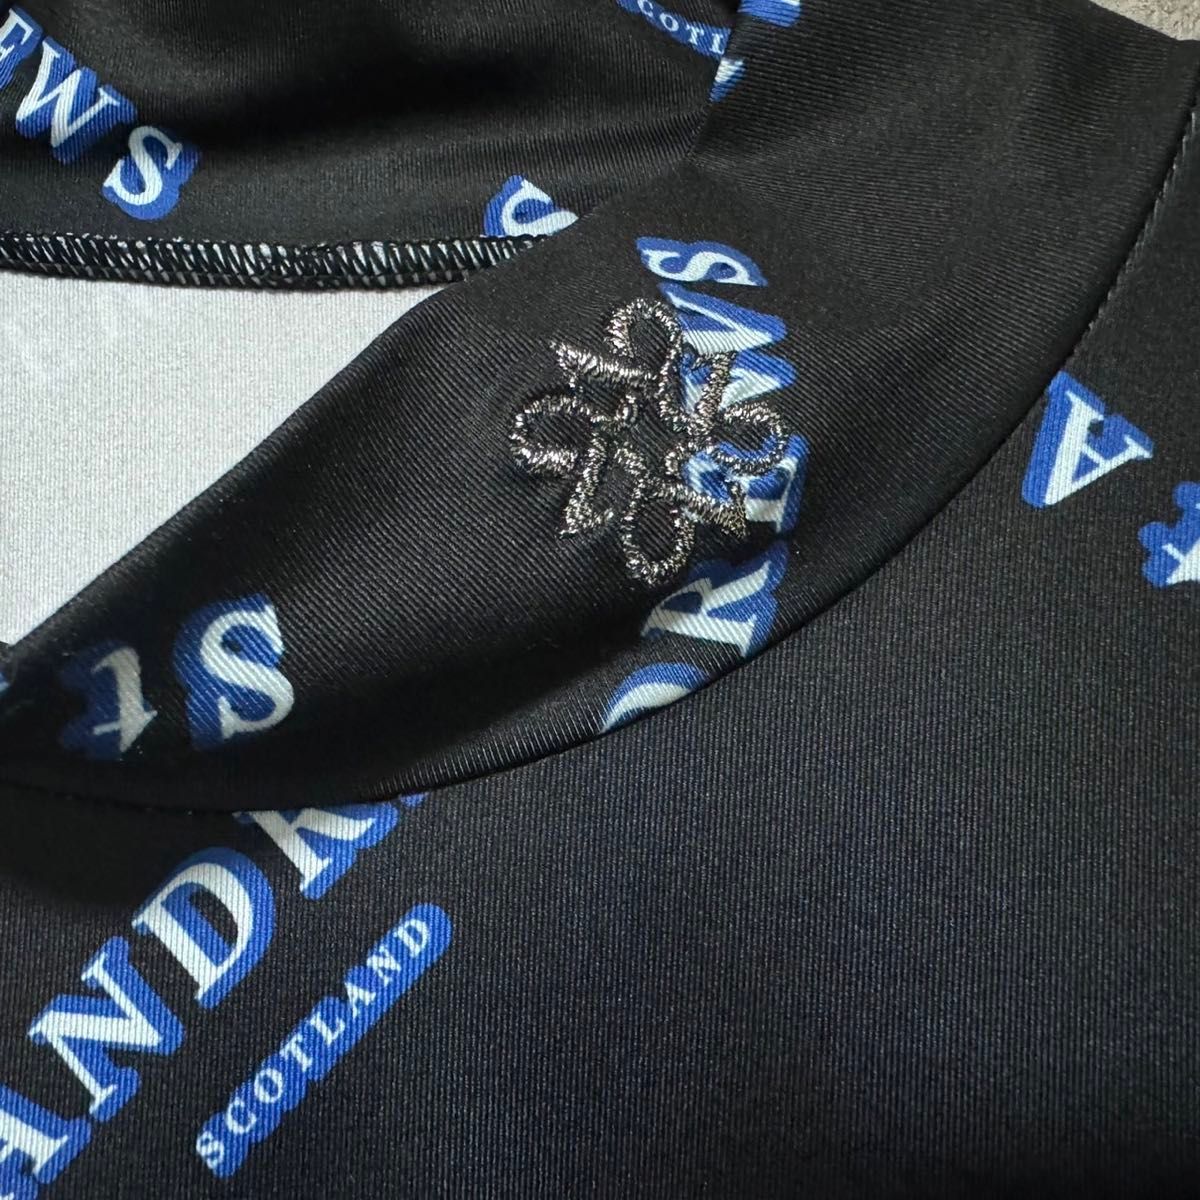 St ANDREWS セント アンドリュース 総柄 ロゴ モックネック シャツ 半袖 ゴルフ ウェア メンズ 人気